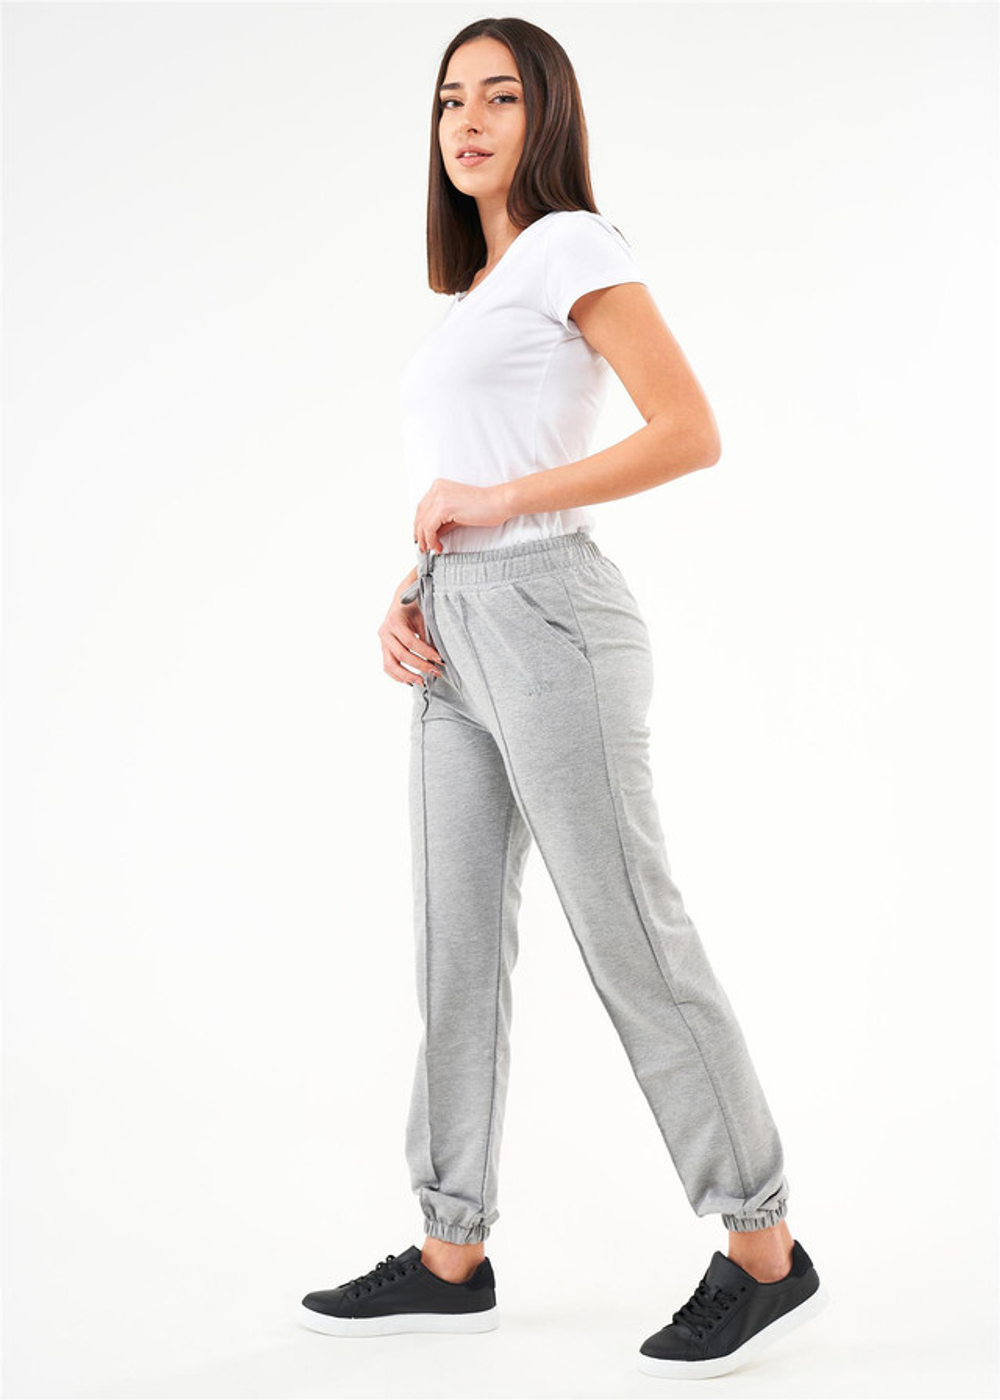 RELAX MODE - Брюки женские штаны спортивные джоггеры - 40059